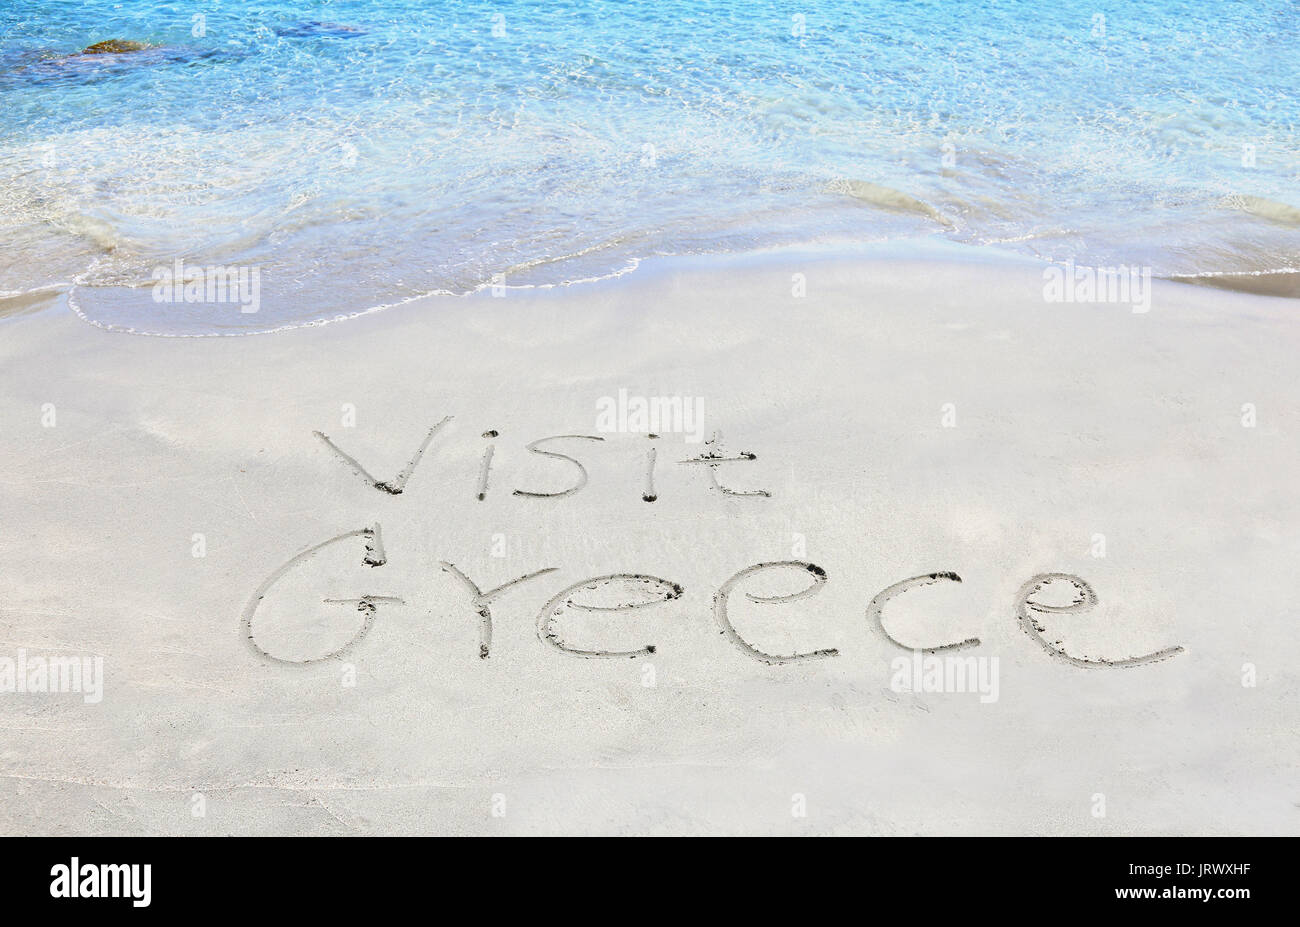 Besuchen sie Griechenland auf Sand geschrieben - griechische Sommer Fotos Stockfoto